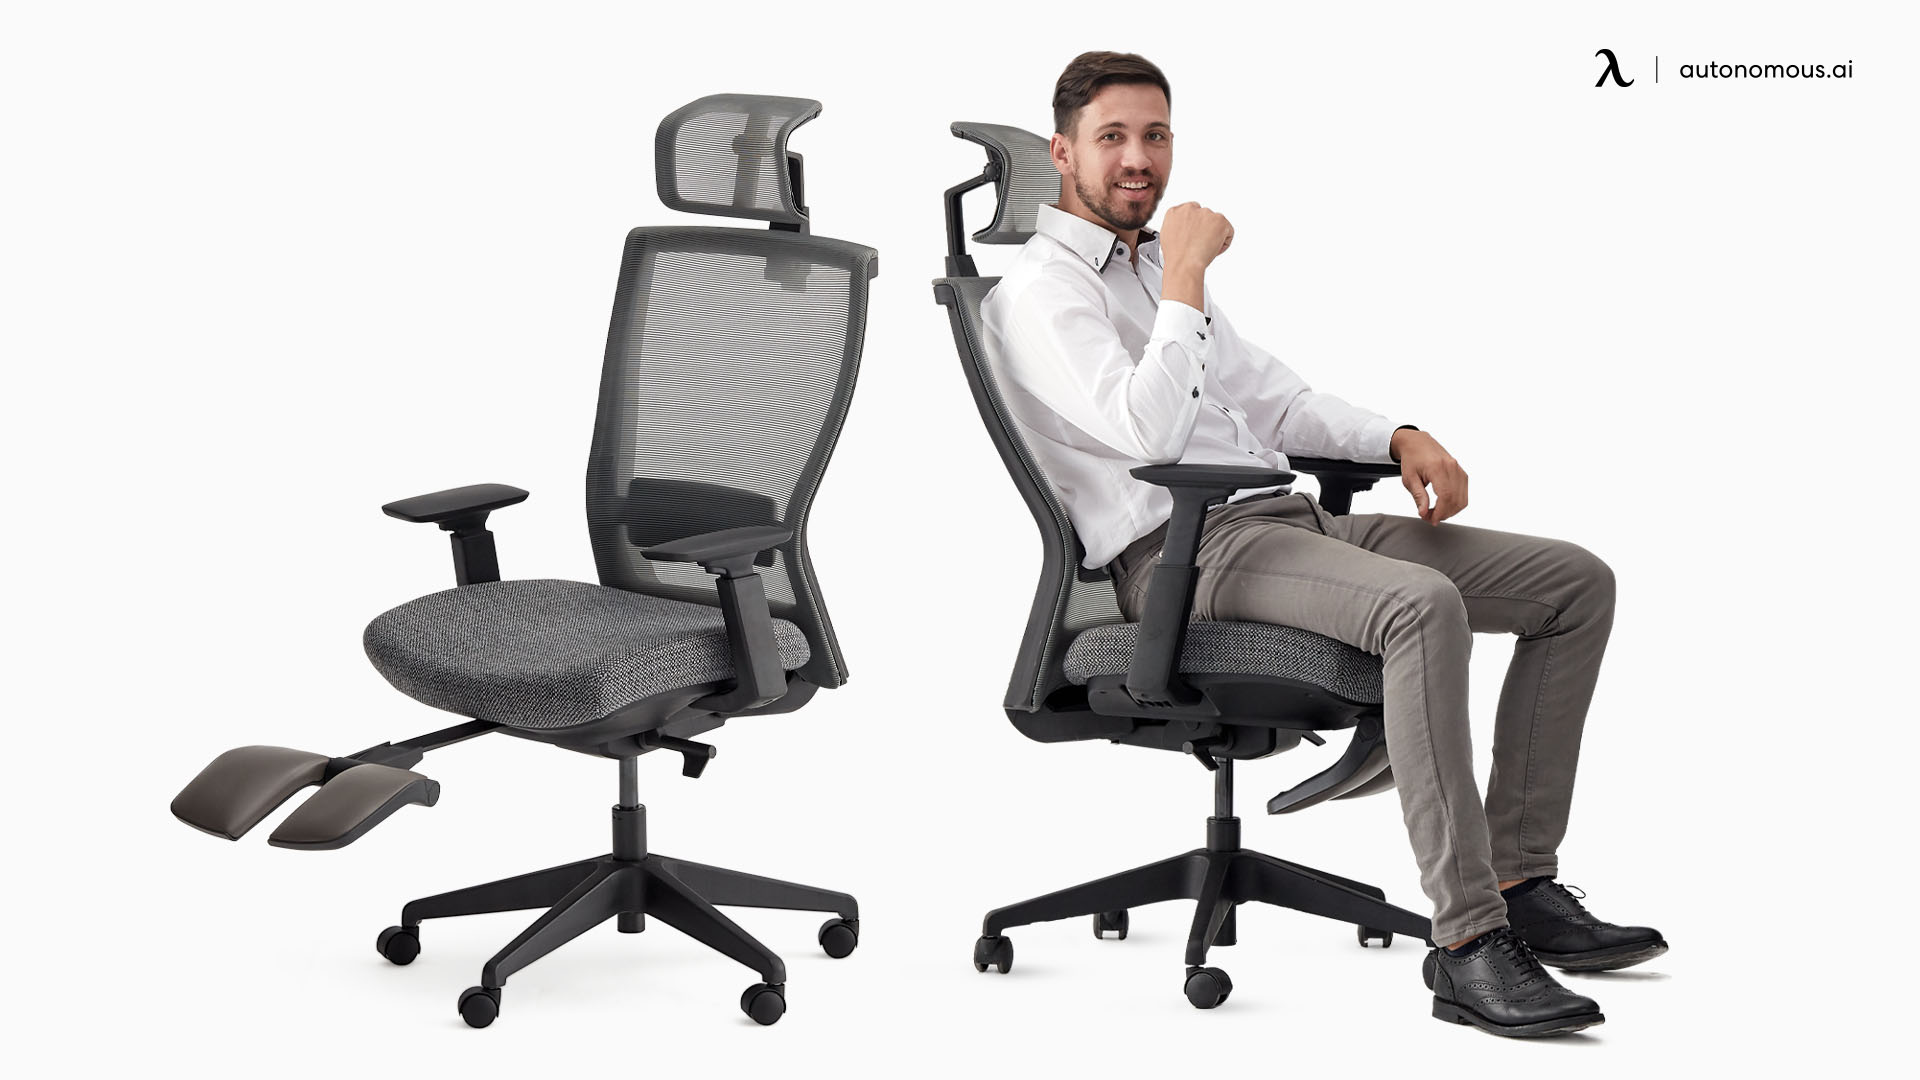 ErgoChair Recline straight back office chair